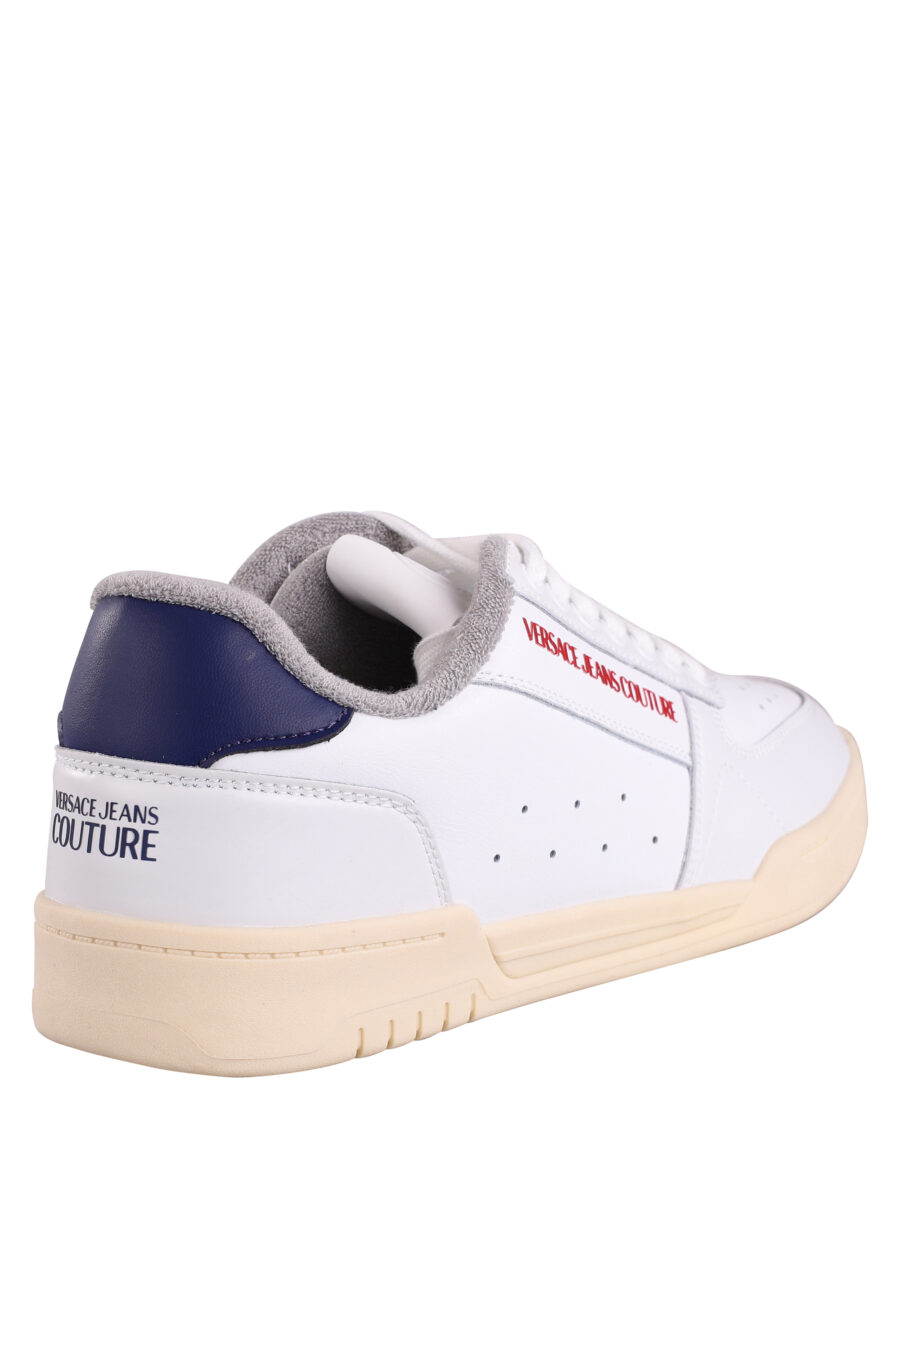 Zapatillas blancas con mini logo rojo y detalle en azul - IMG 9025